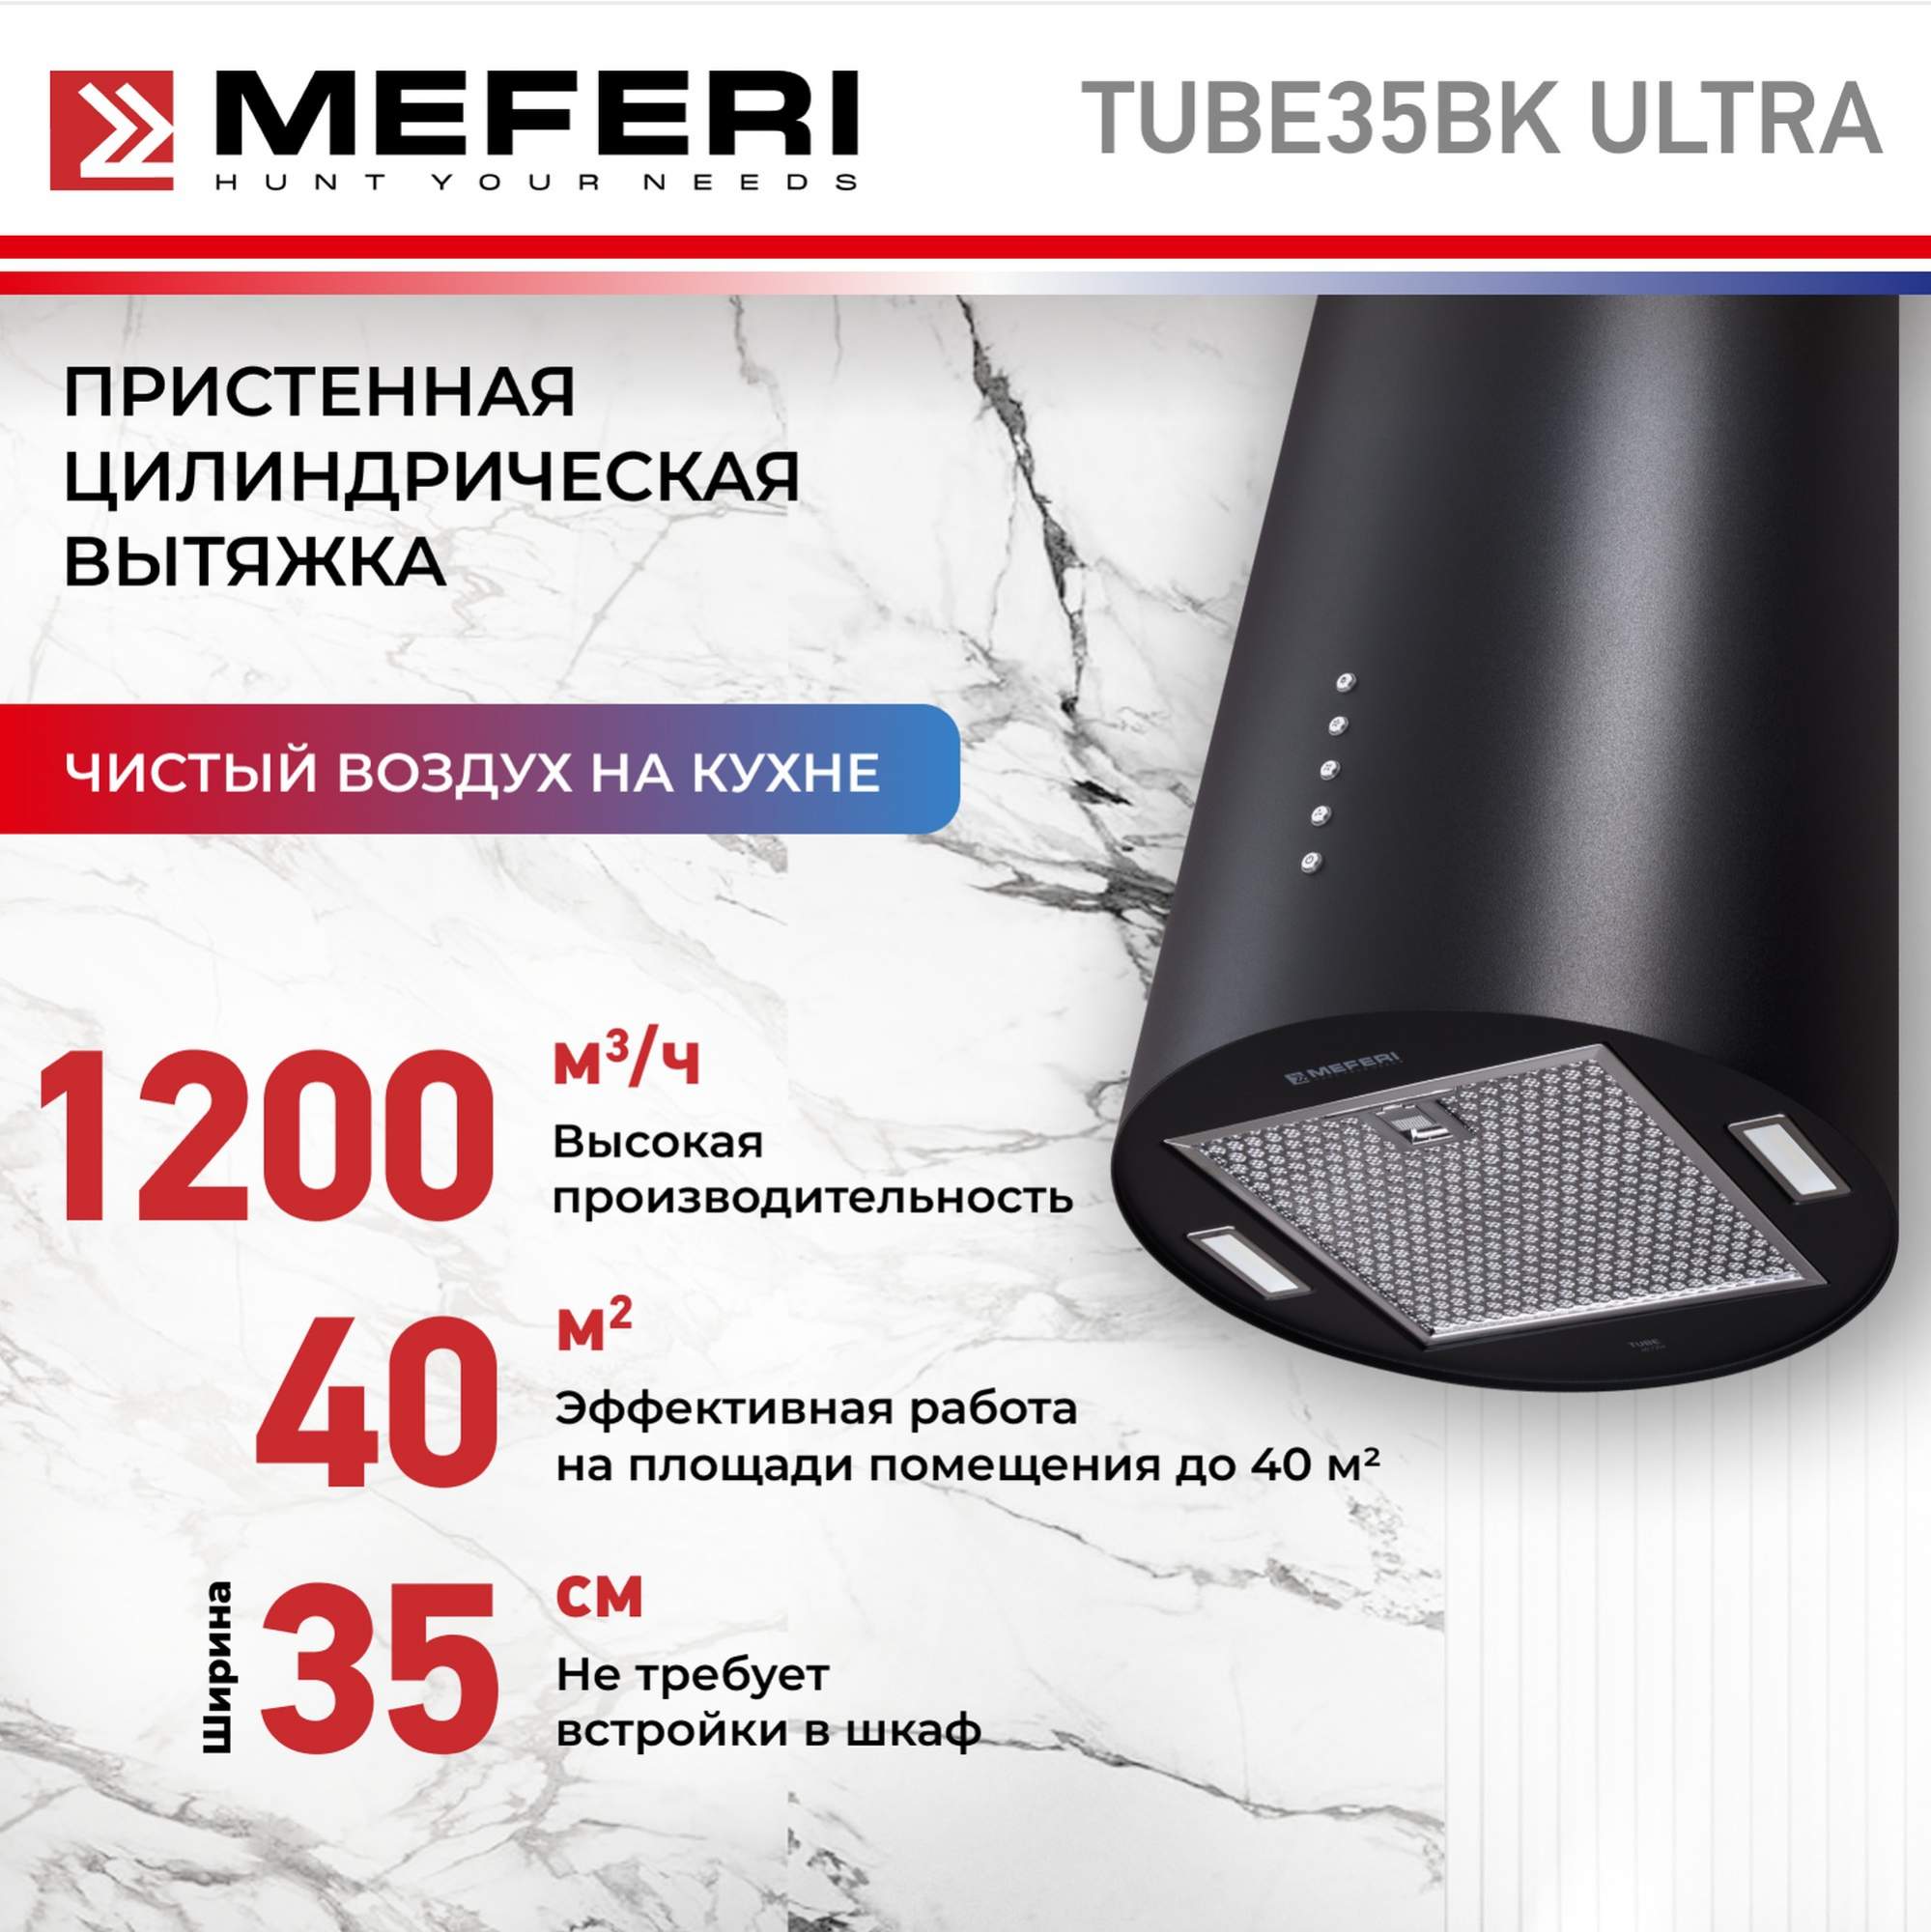 Цилиндрическая вытяжка Meferi TUBE35BK ULTRA